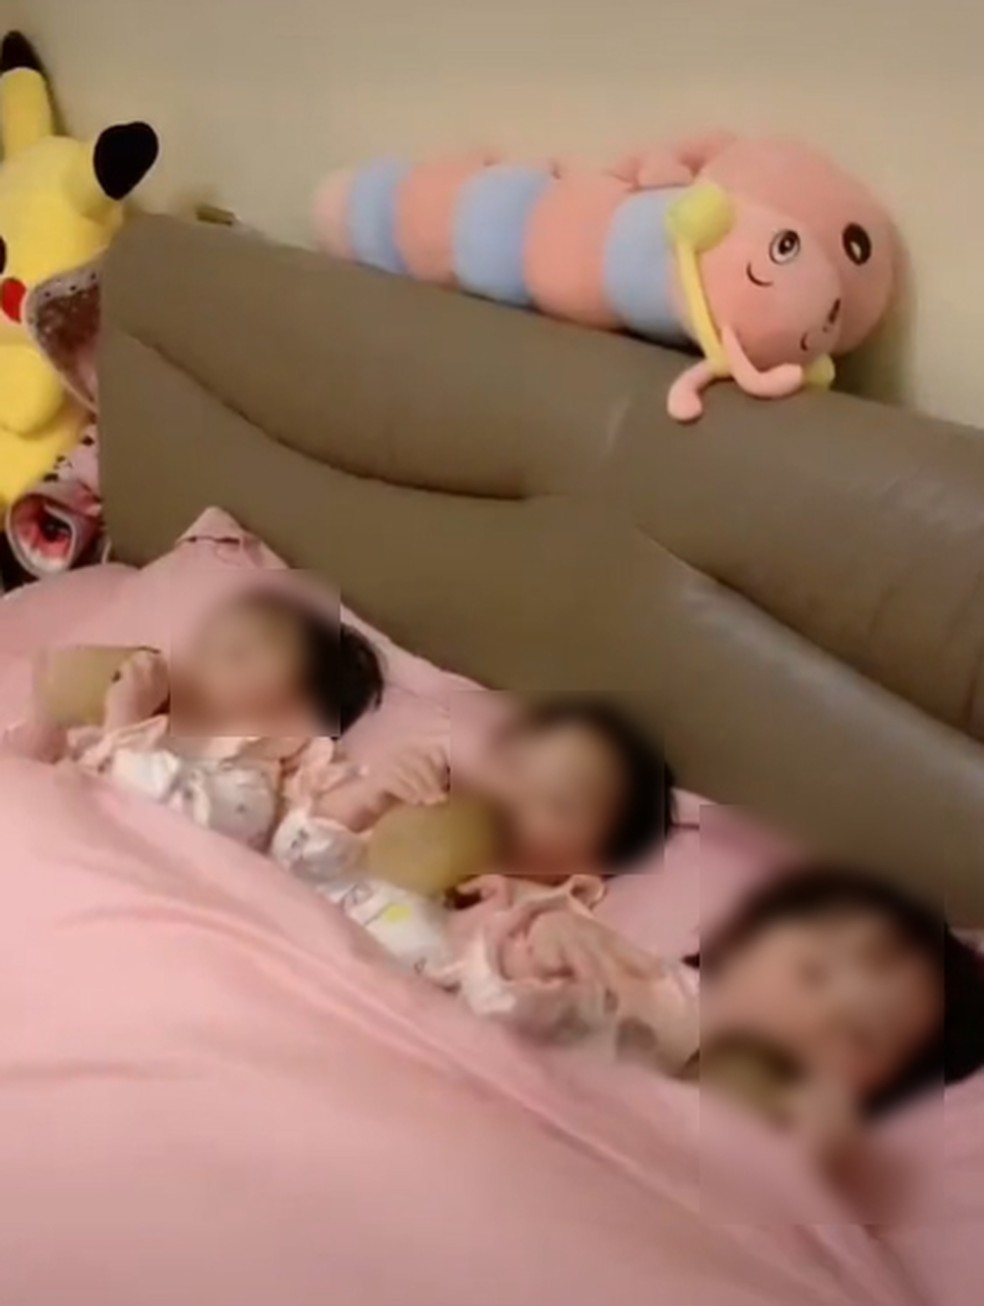 Internautas demonstram surpresa com tanta ordem na hora de dormir, já que envolve três crianças pequenas — Foto: Reprodução/TikTok triplets909